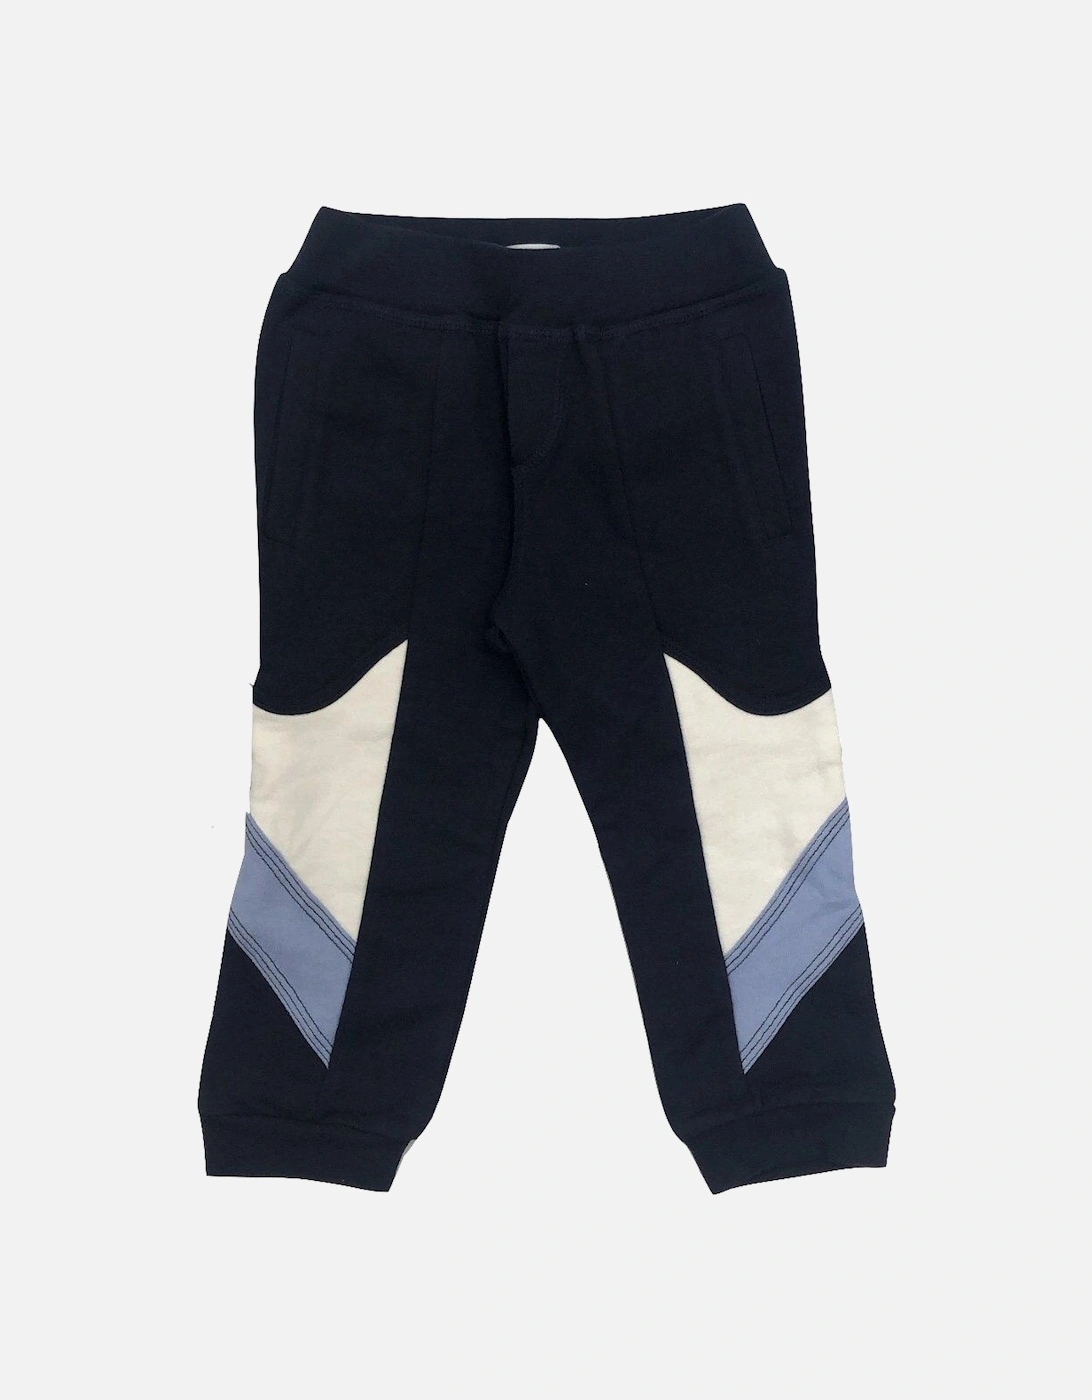 Boys Navy Trouser, 2 of 1